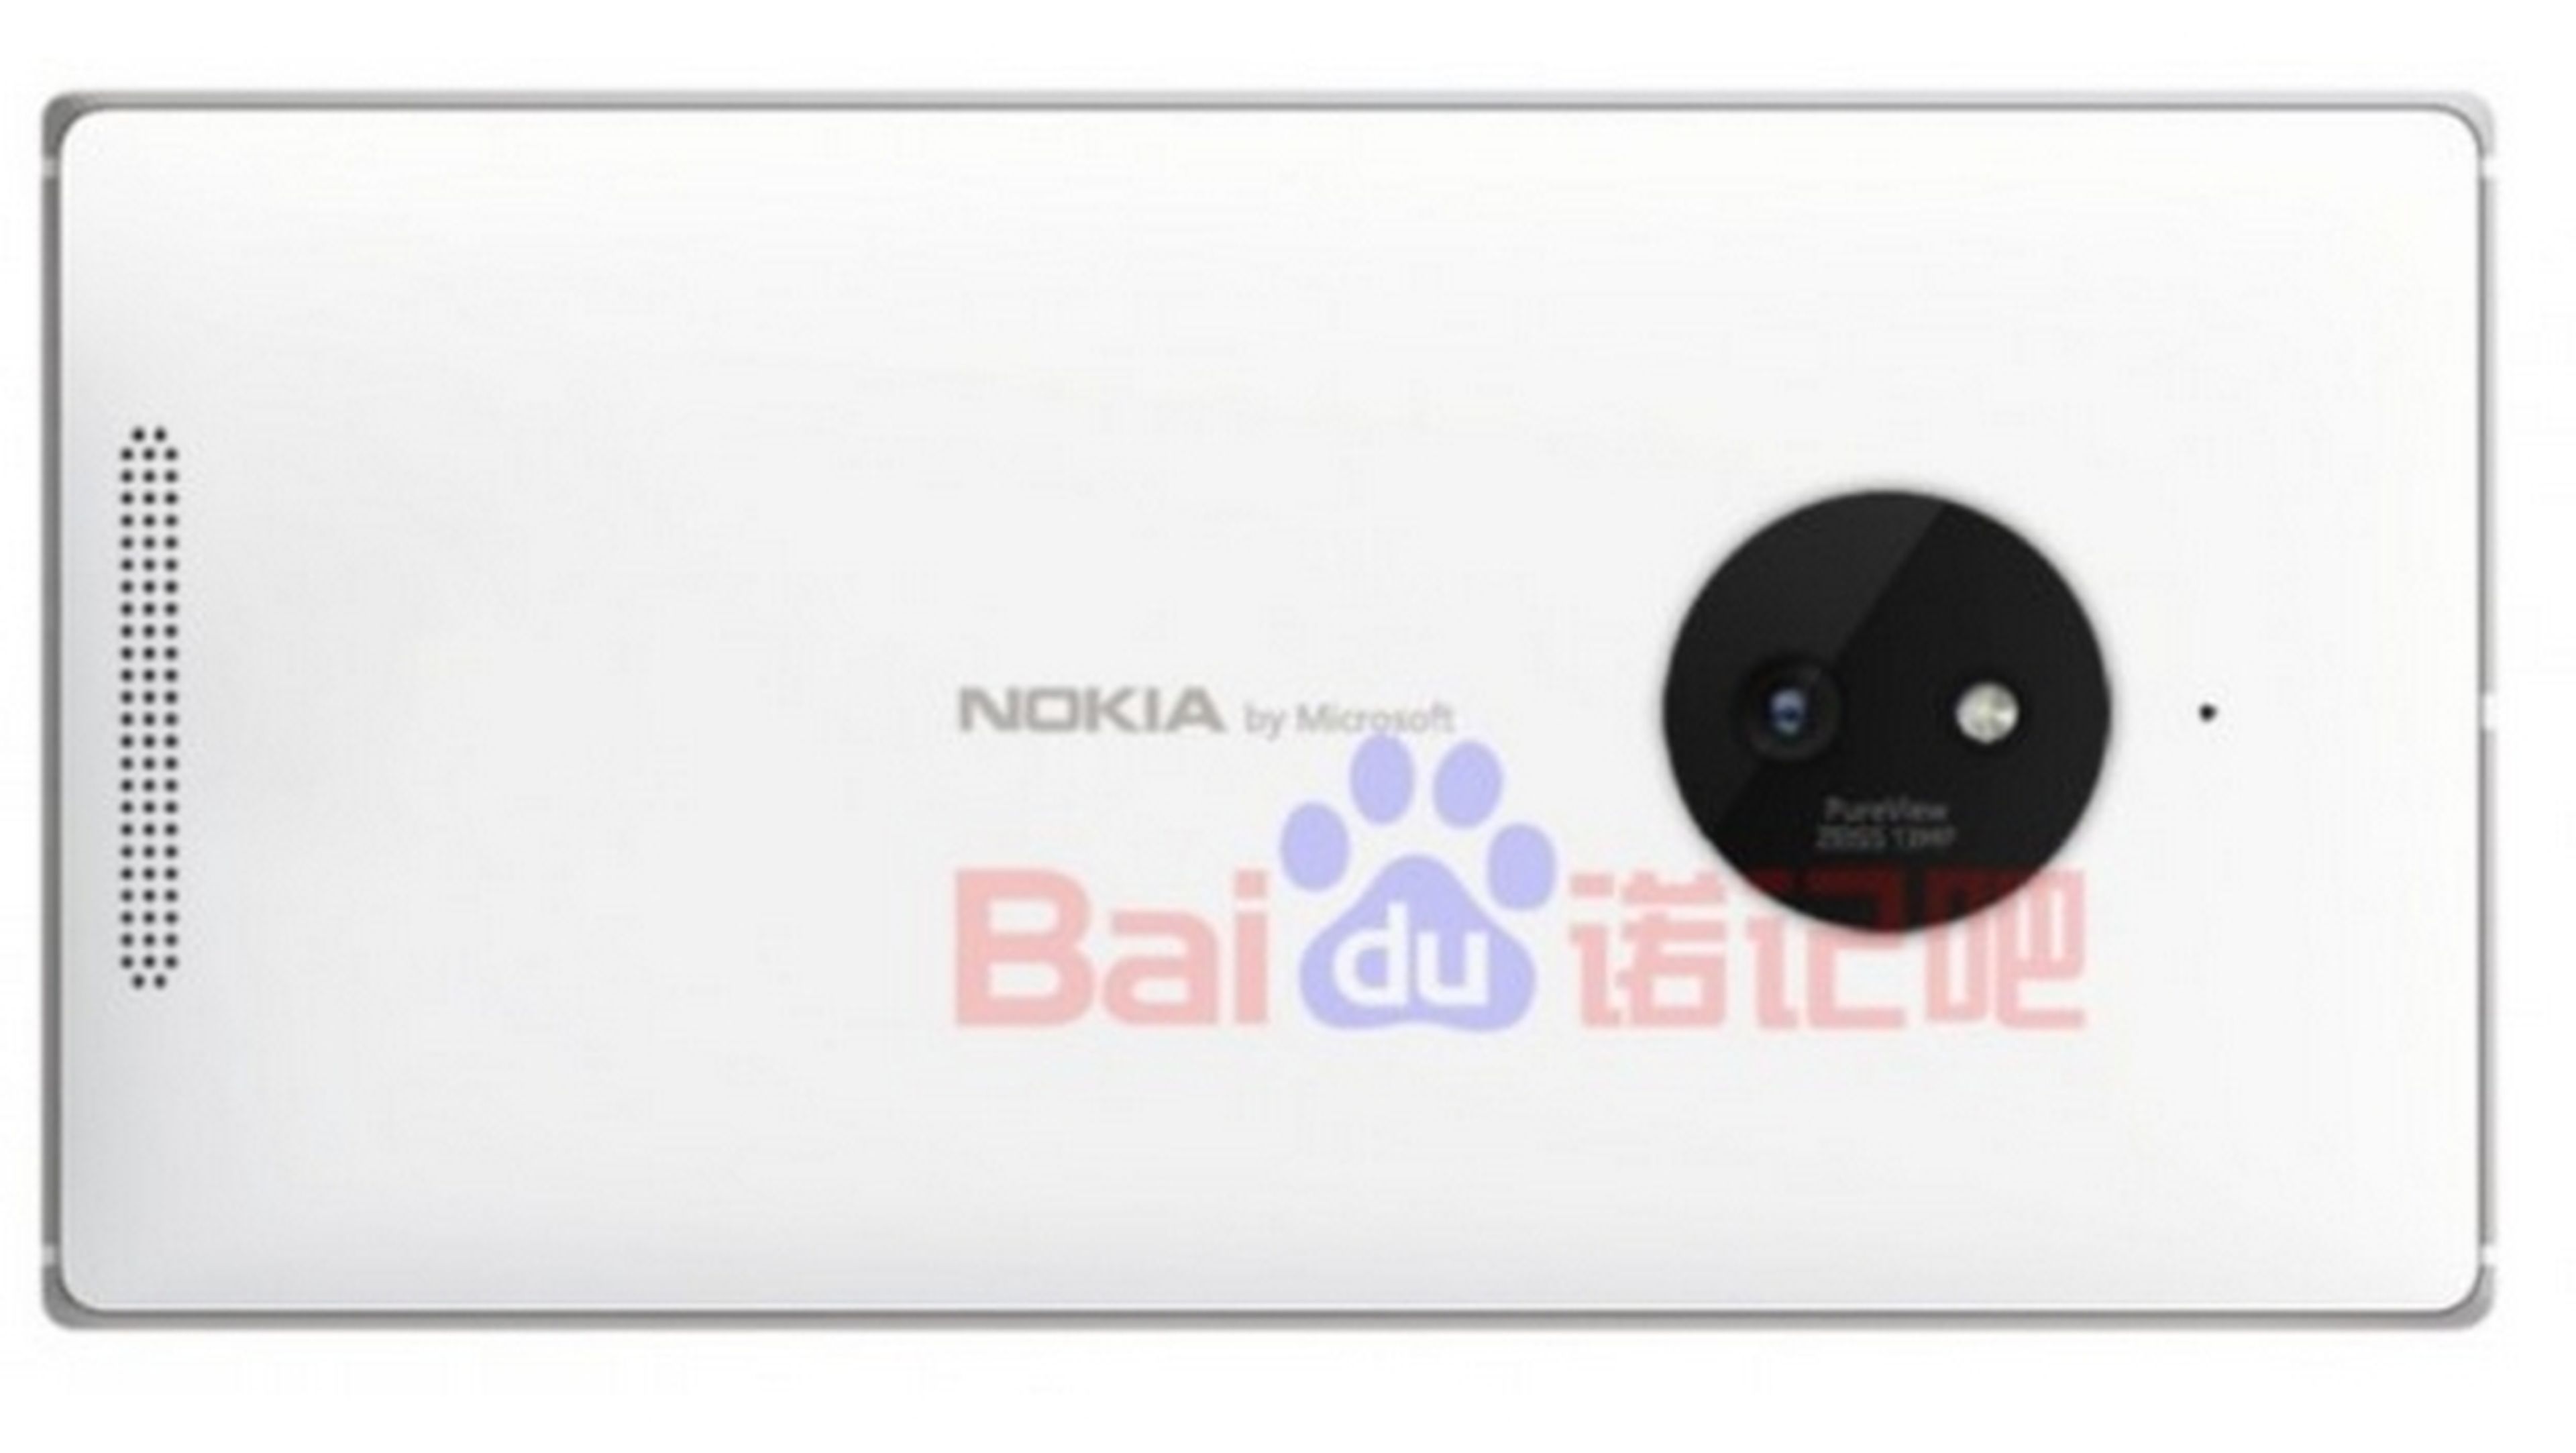 Se desvela el logo "Nokia by Microsoft" en el Lumia 830.